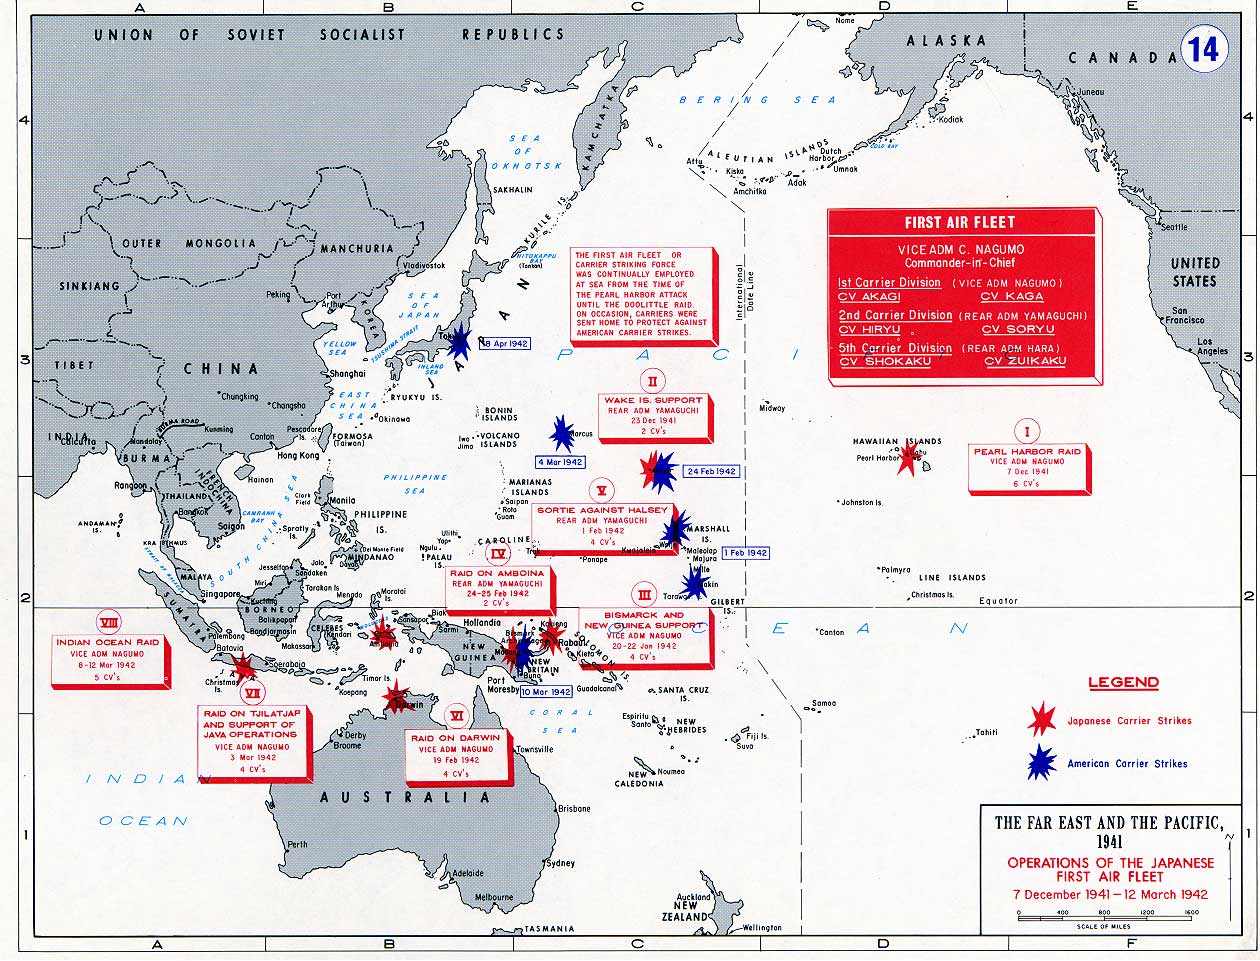 Opérations de la 1ère Flotte aéronavale japonaise du 7.12.41 au 12.3.42 -- Source: Académie militaire de West Point. -